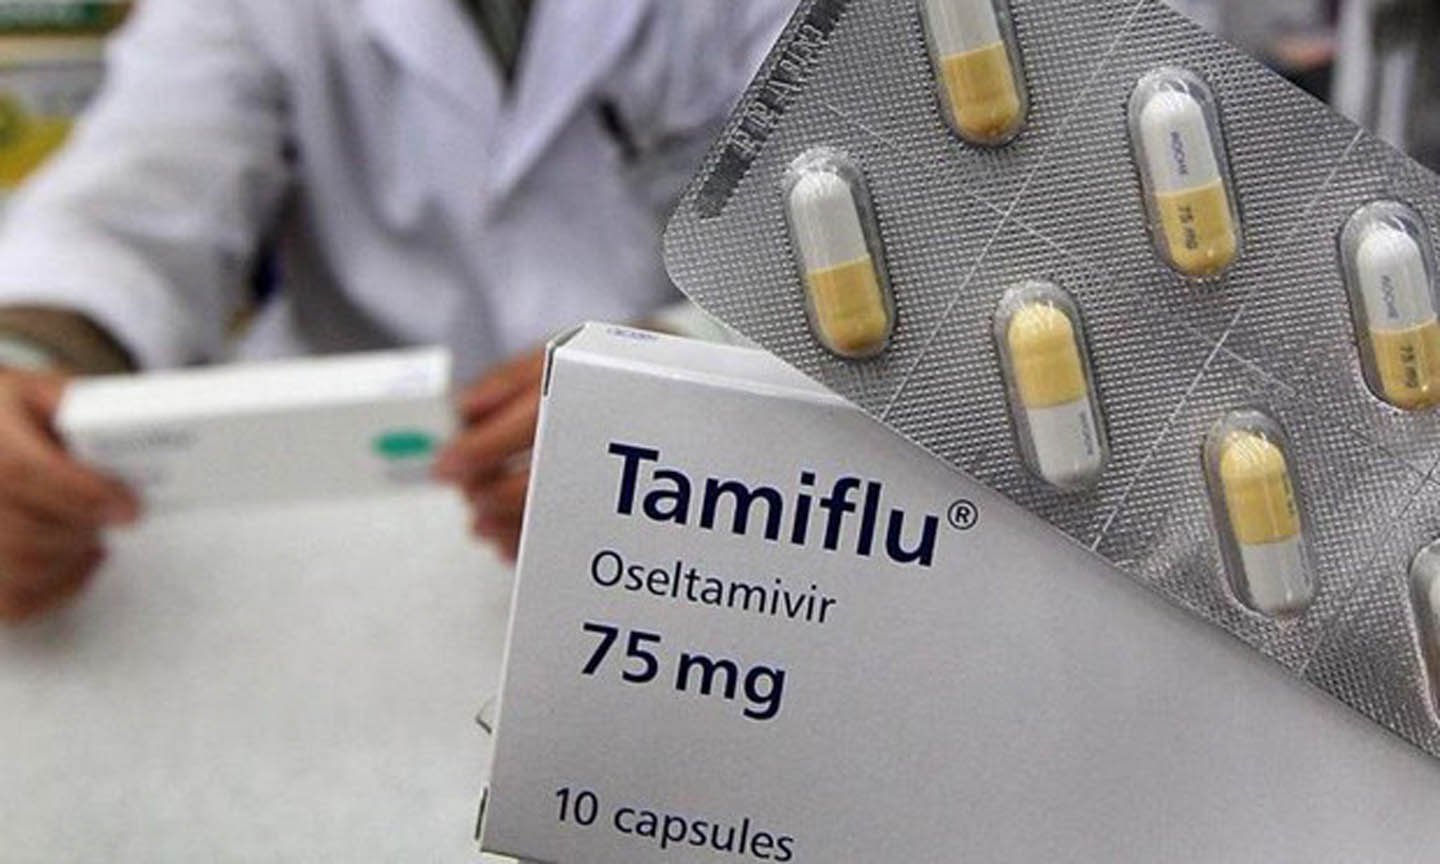   Thuốc Tamiflu thường được sử dụng để điều trị bệnh cúm  